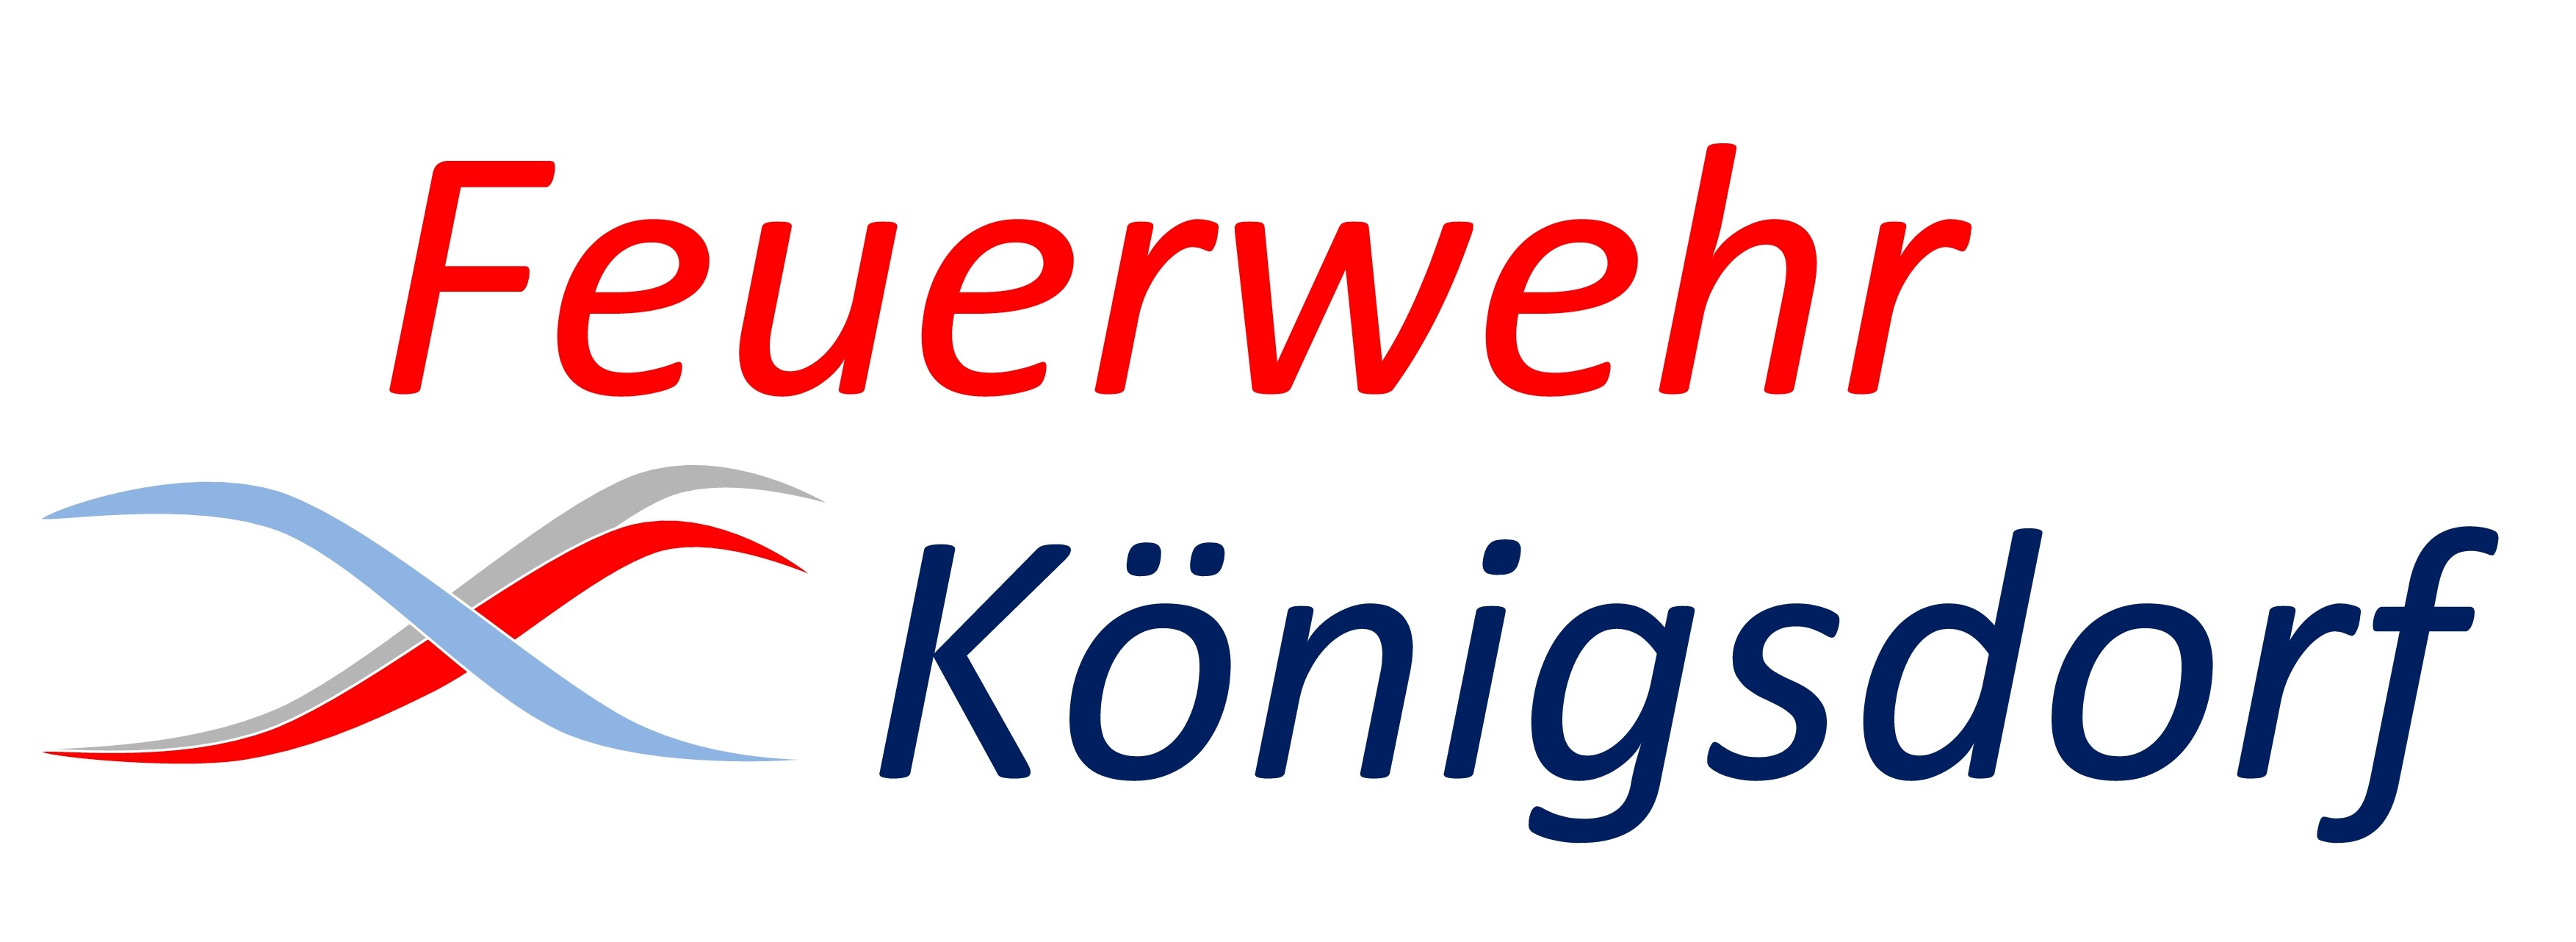 Feuerwehr Königsdorf - Hilfeleistung seit 1874